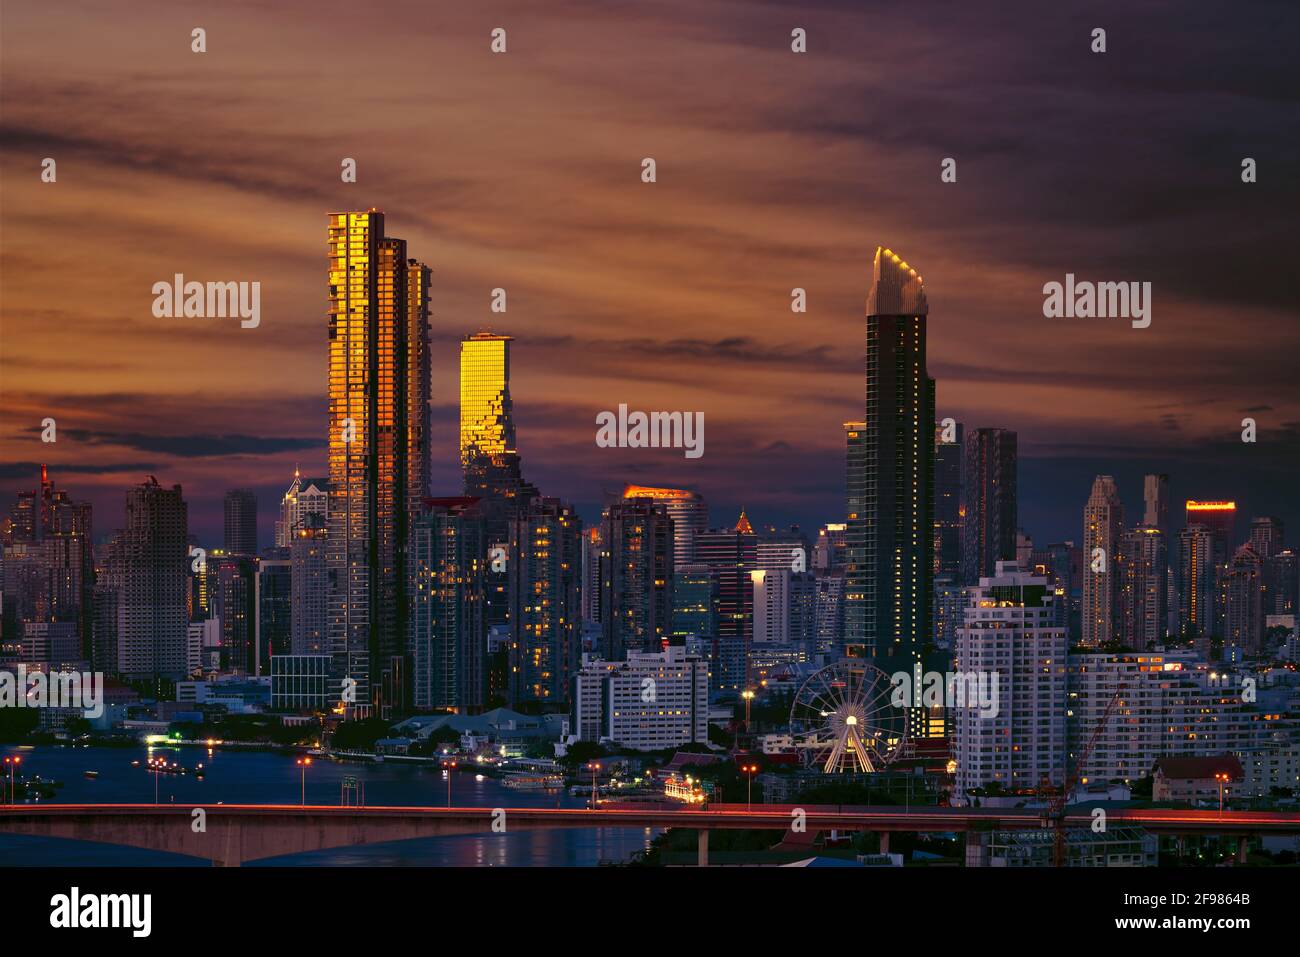 amazing view of twilight sunset bangkok cityscape Stock Photo